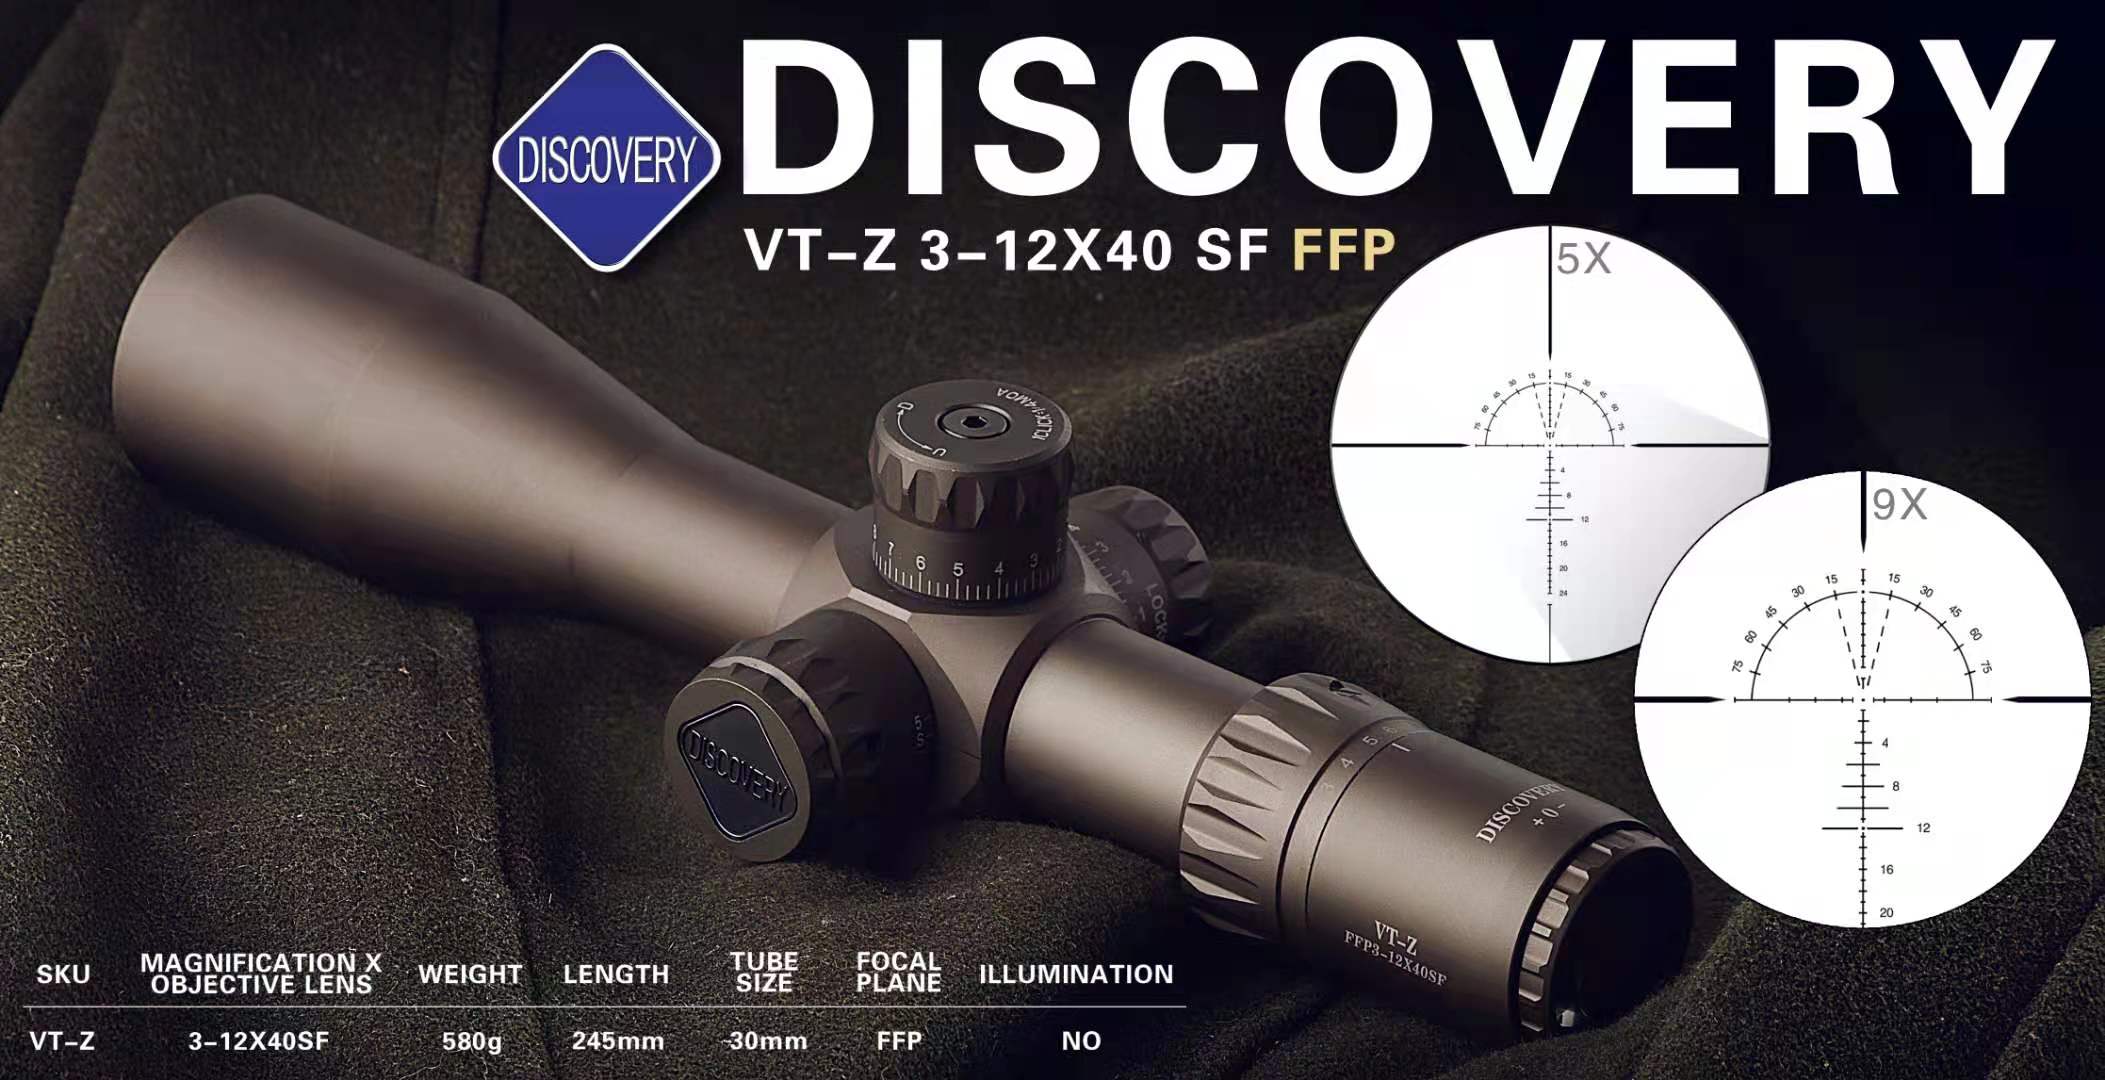 ống ngắm vtz 3-12x40 sf ffp chính hãng